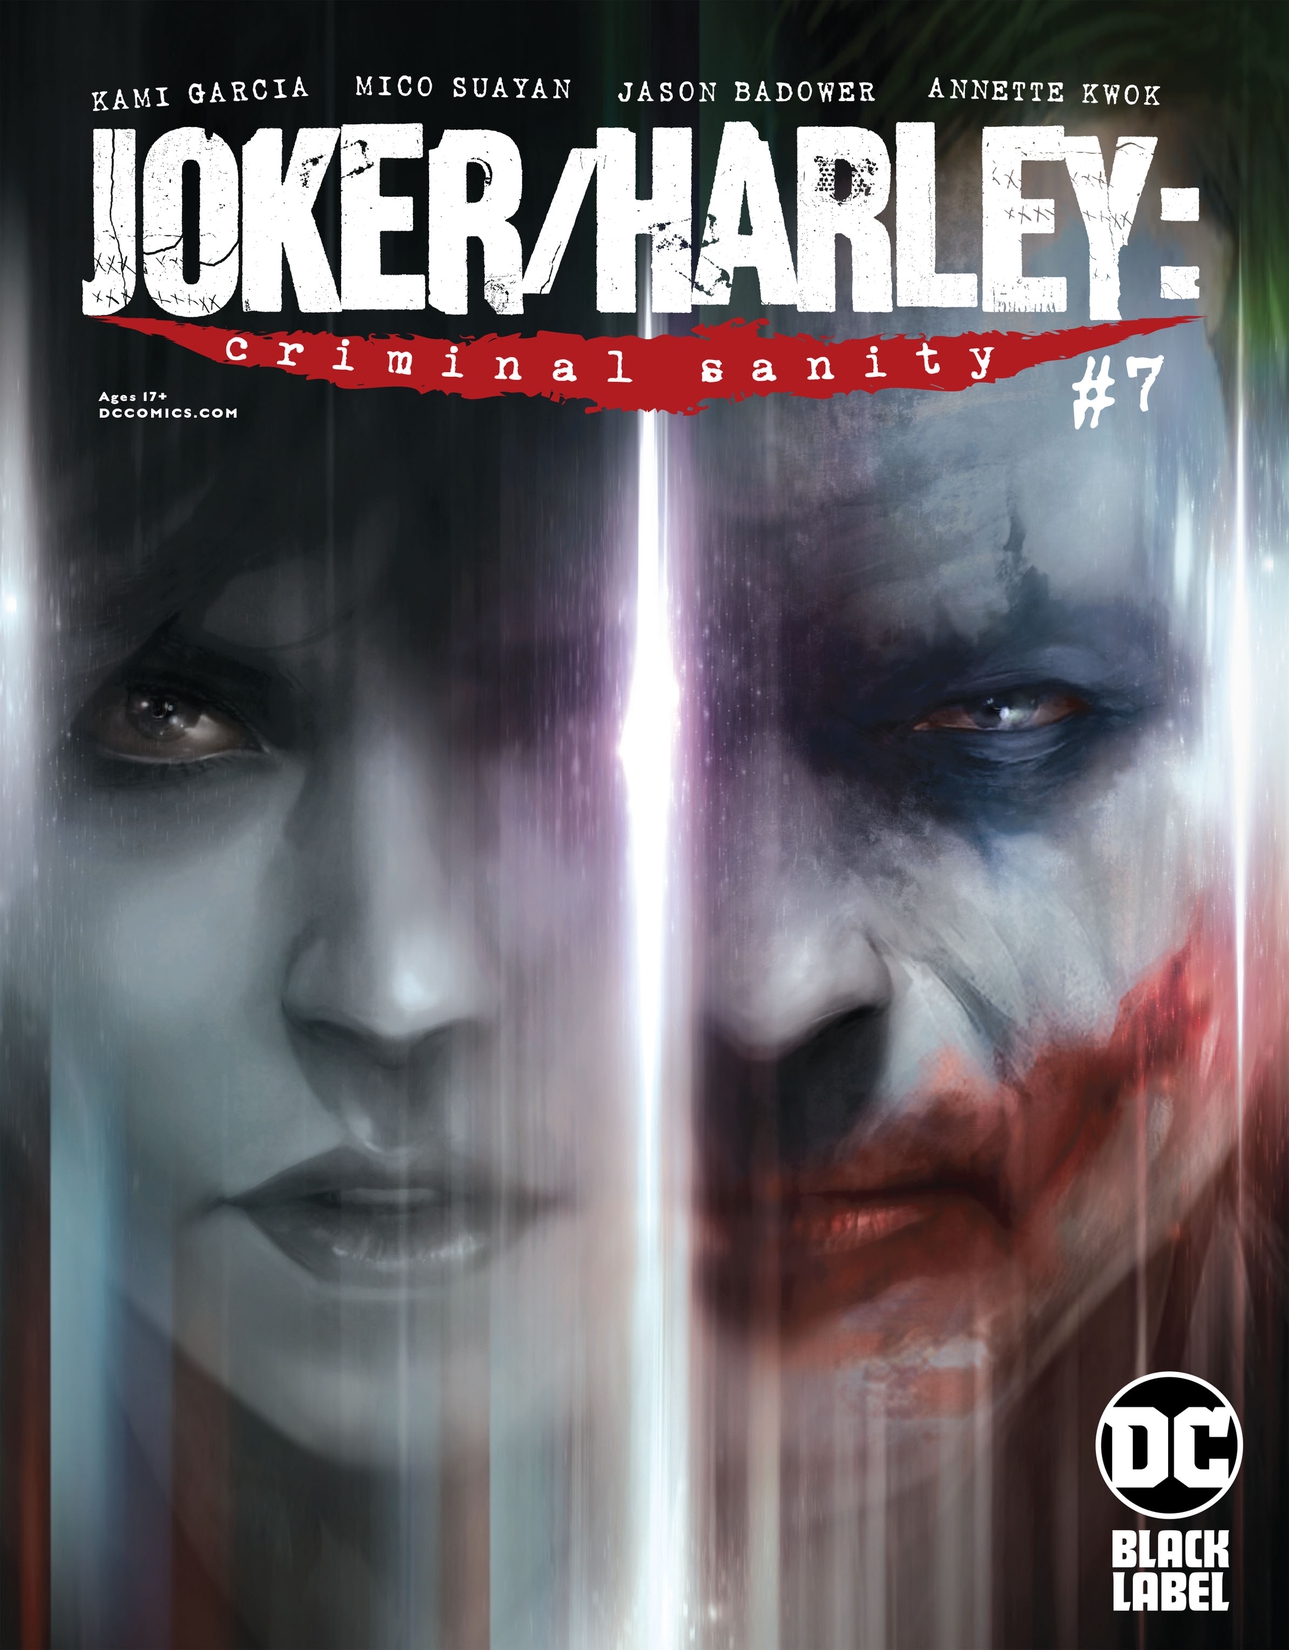 Joker/Harley: Criminal Sanity #7 preview images